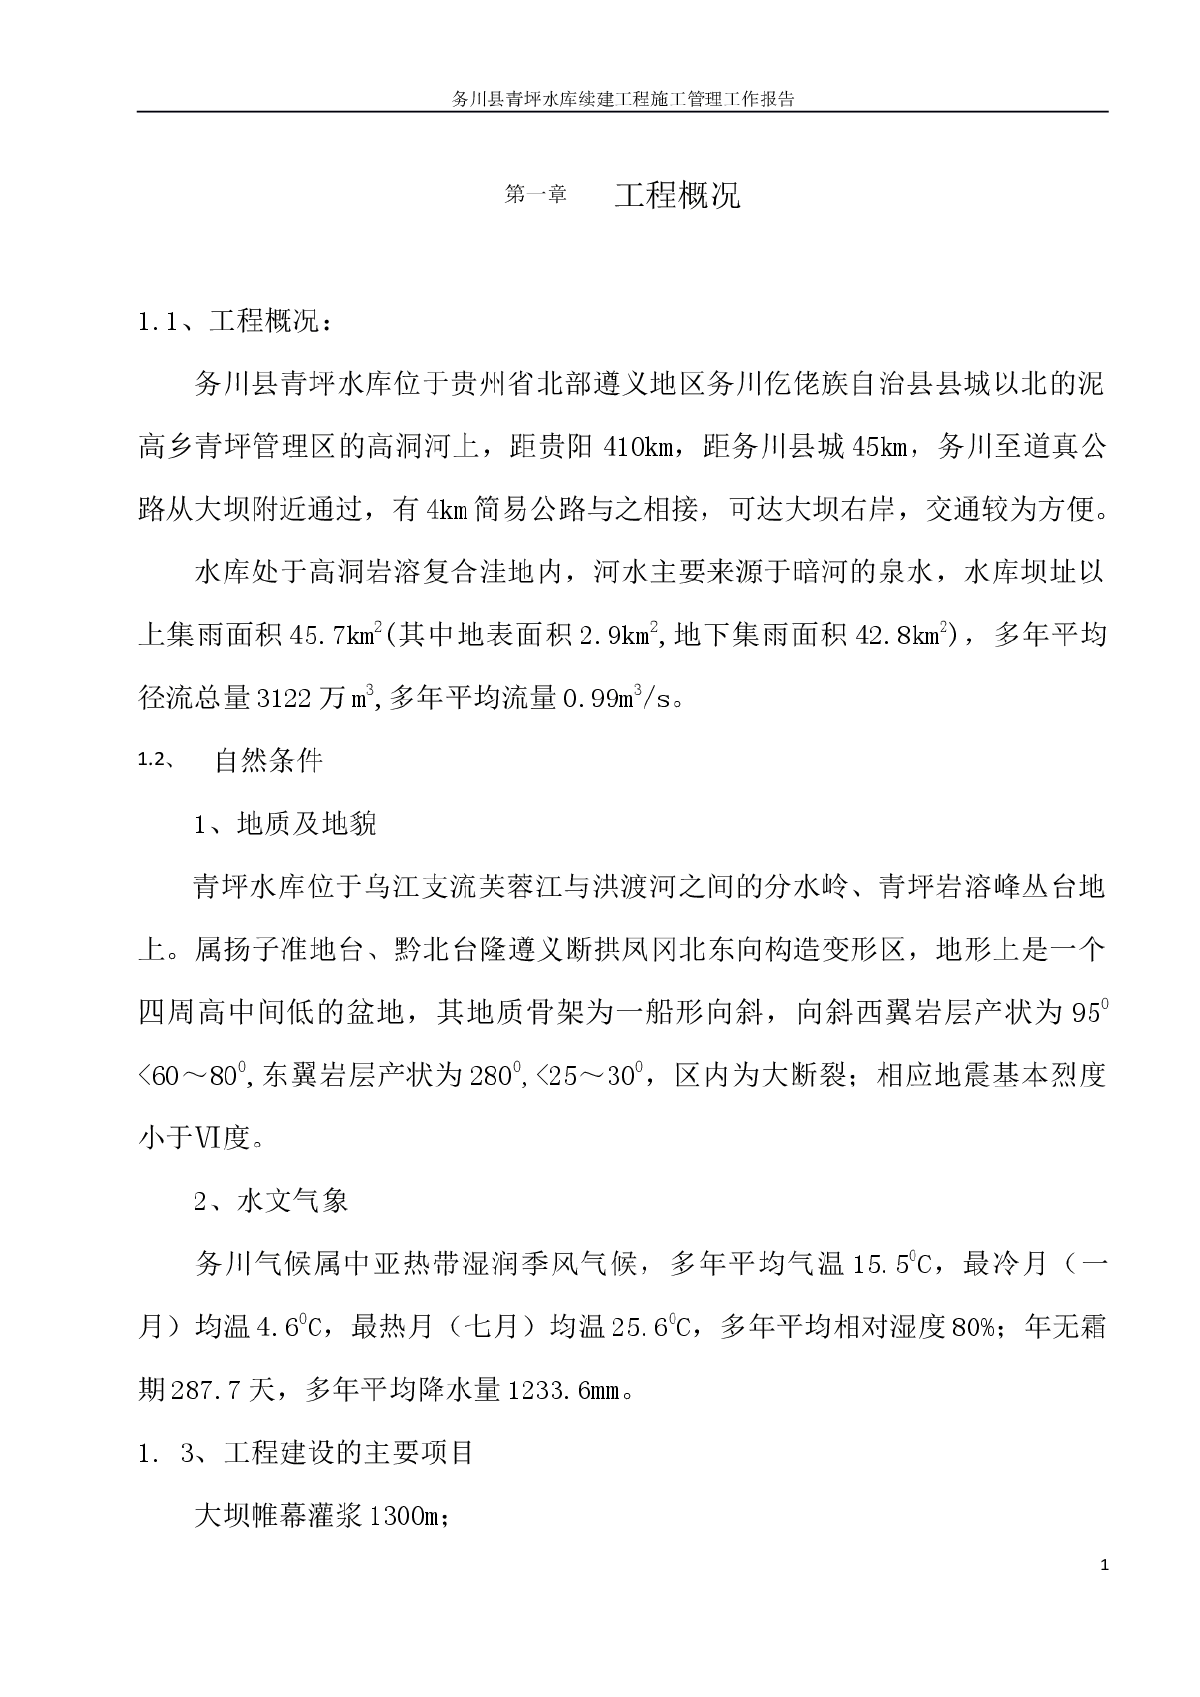 务川县青坪水库除险加固续建工程施工管理工作报告